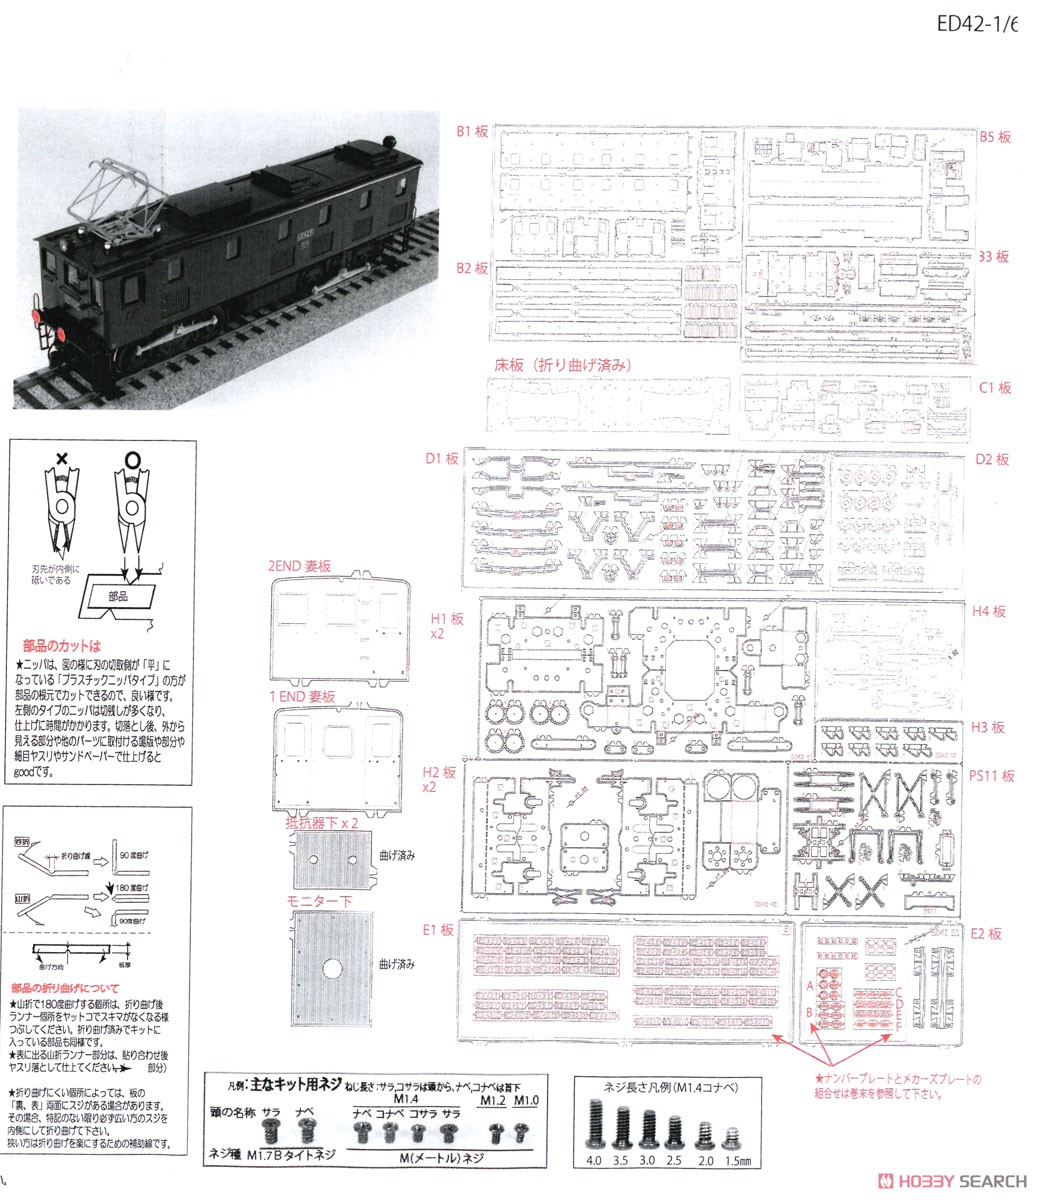 16番(HO) 鉄道省 ED42形 電気機関車 (標準型) 組立キット (組み立てキット) (鉄道模型) 設計図1